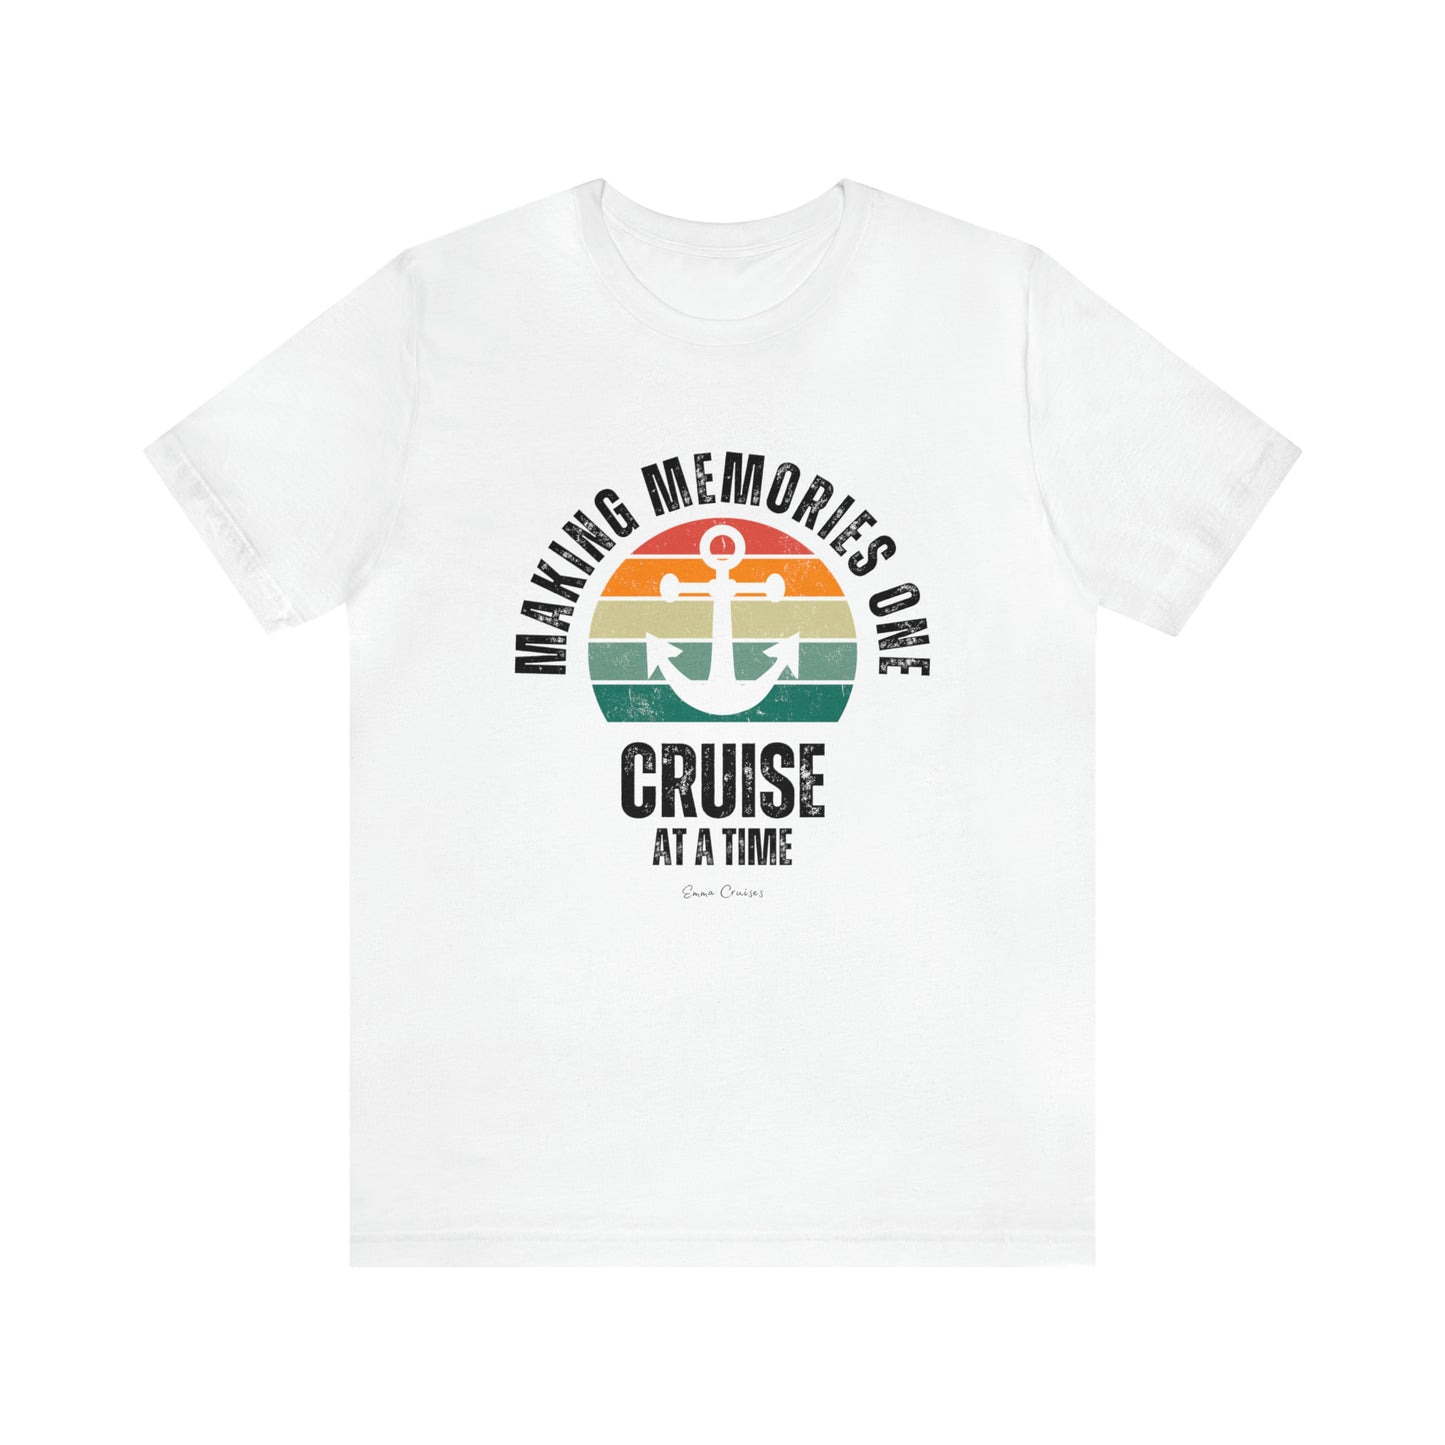 Haciendo recuerdos un crucero a la vez - Camiseta UNISEX